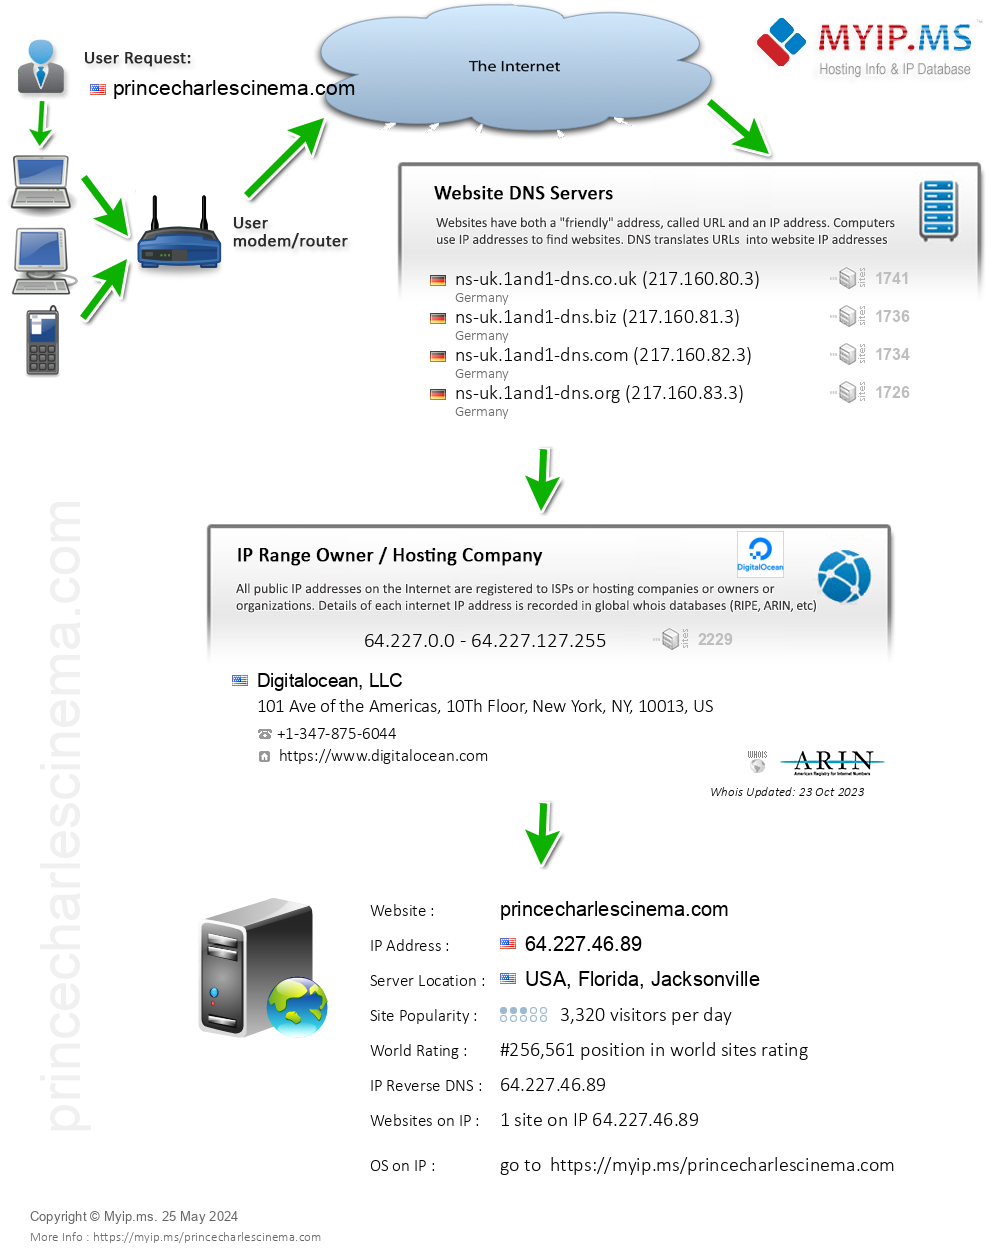 Princecharlescinema.com - Website Hosting Visual IP Diagram